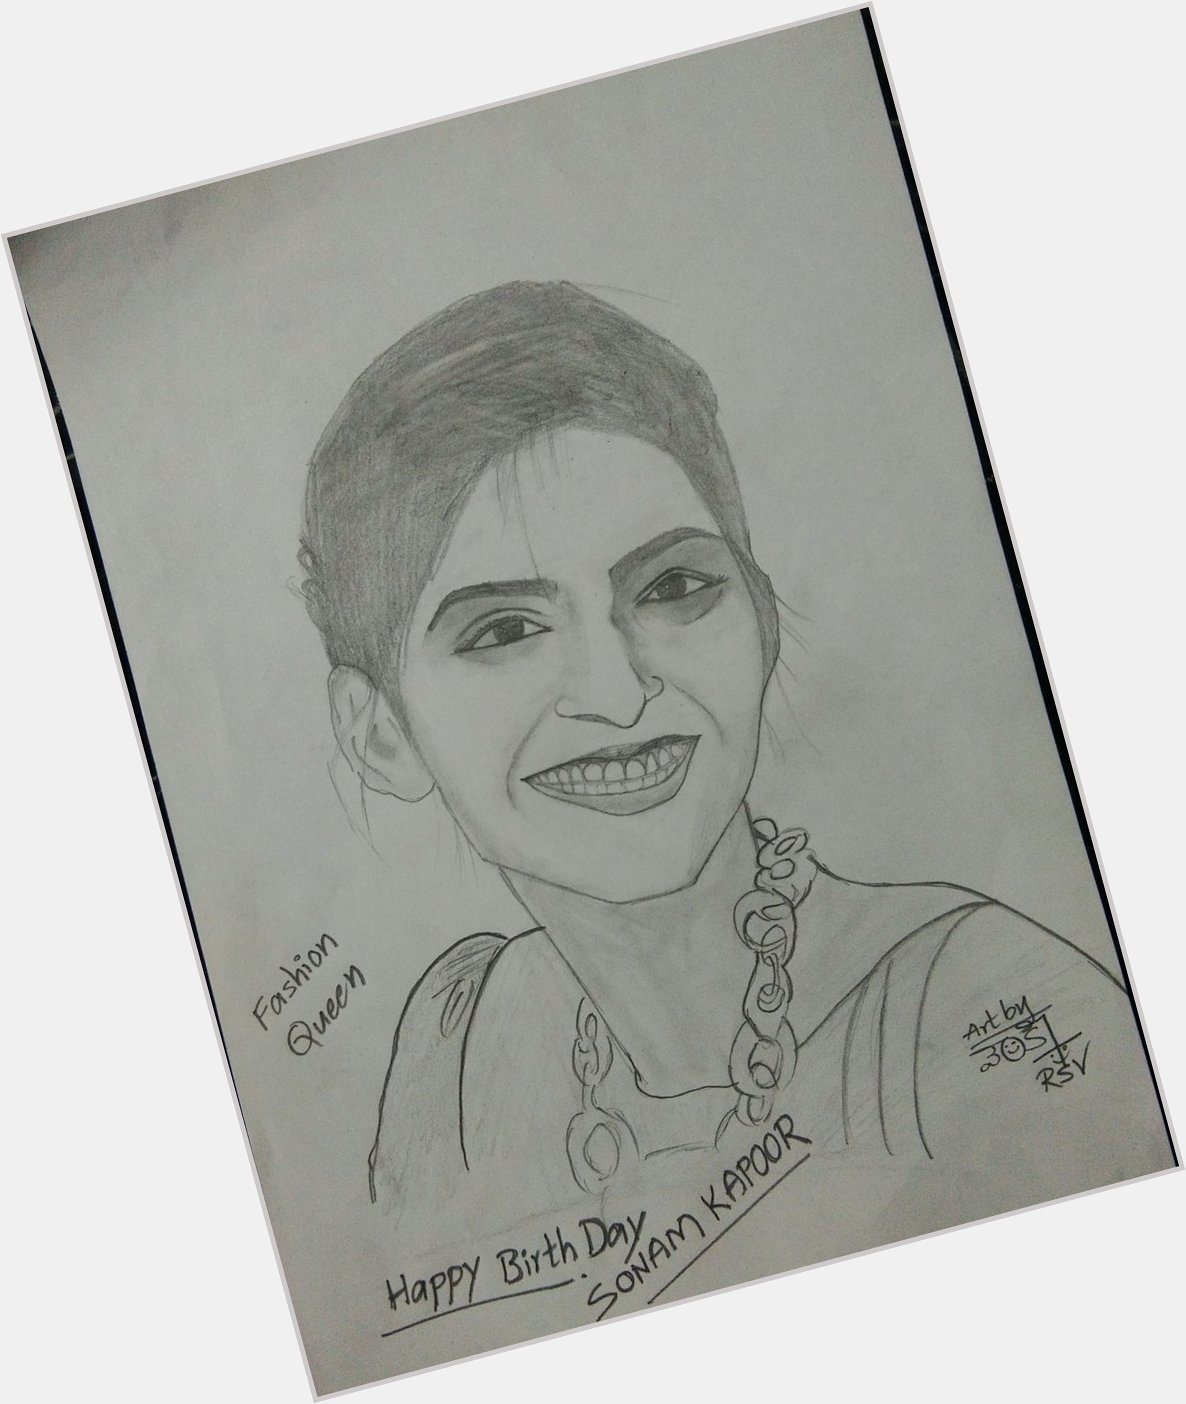 Happy Birthday fashion Queen sonam kapoor it\s my pencil sketch for u 